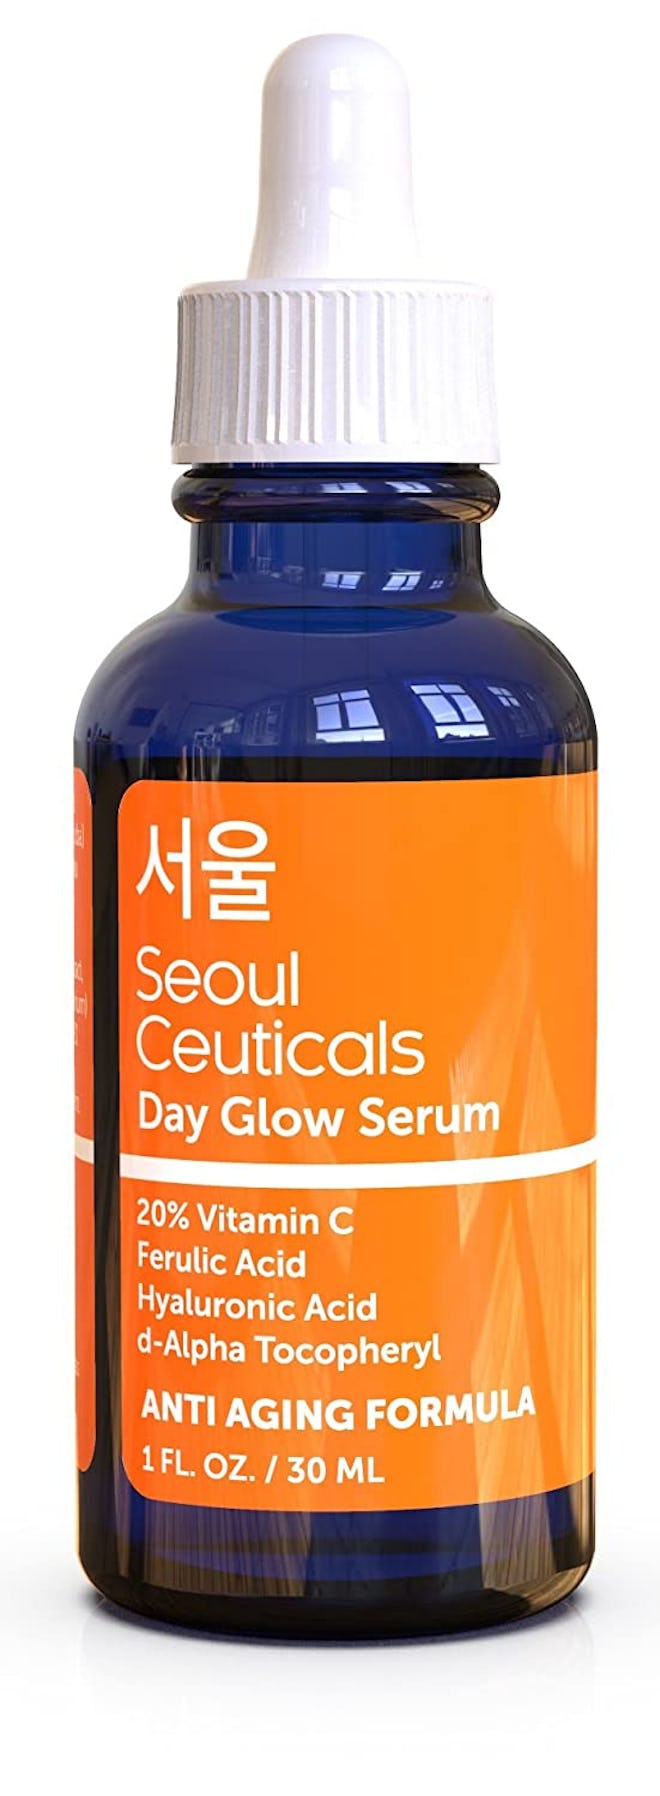 Seoul Ceuticals 20% Vitamin C Hyaluronic Acid Serum